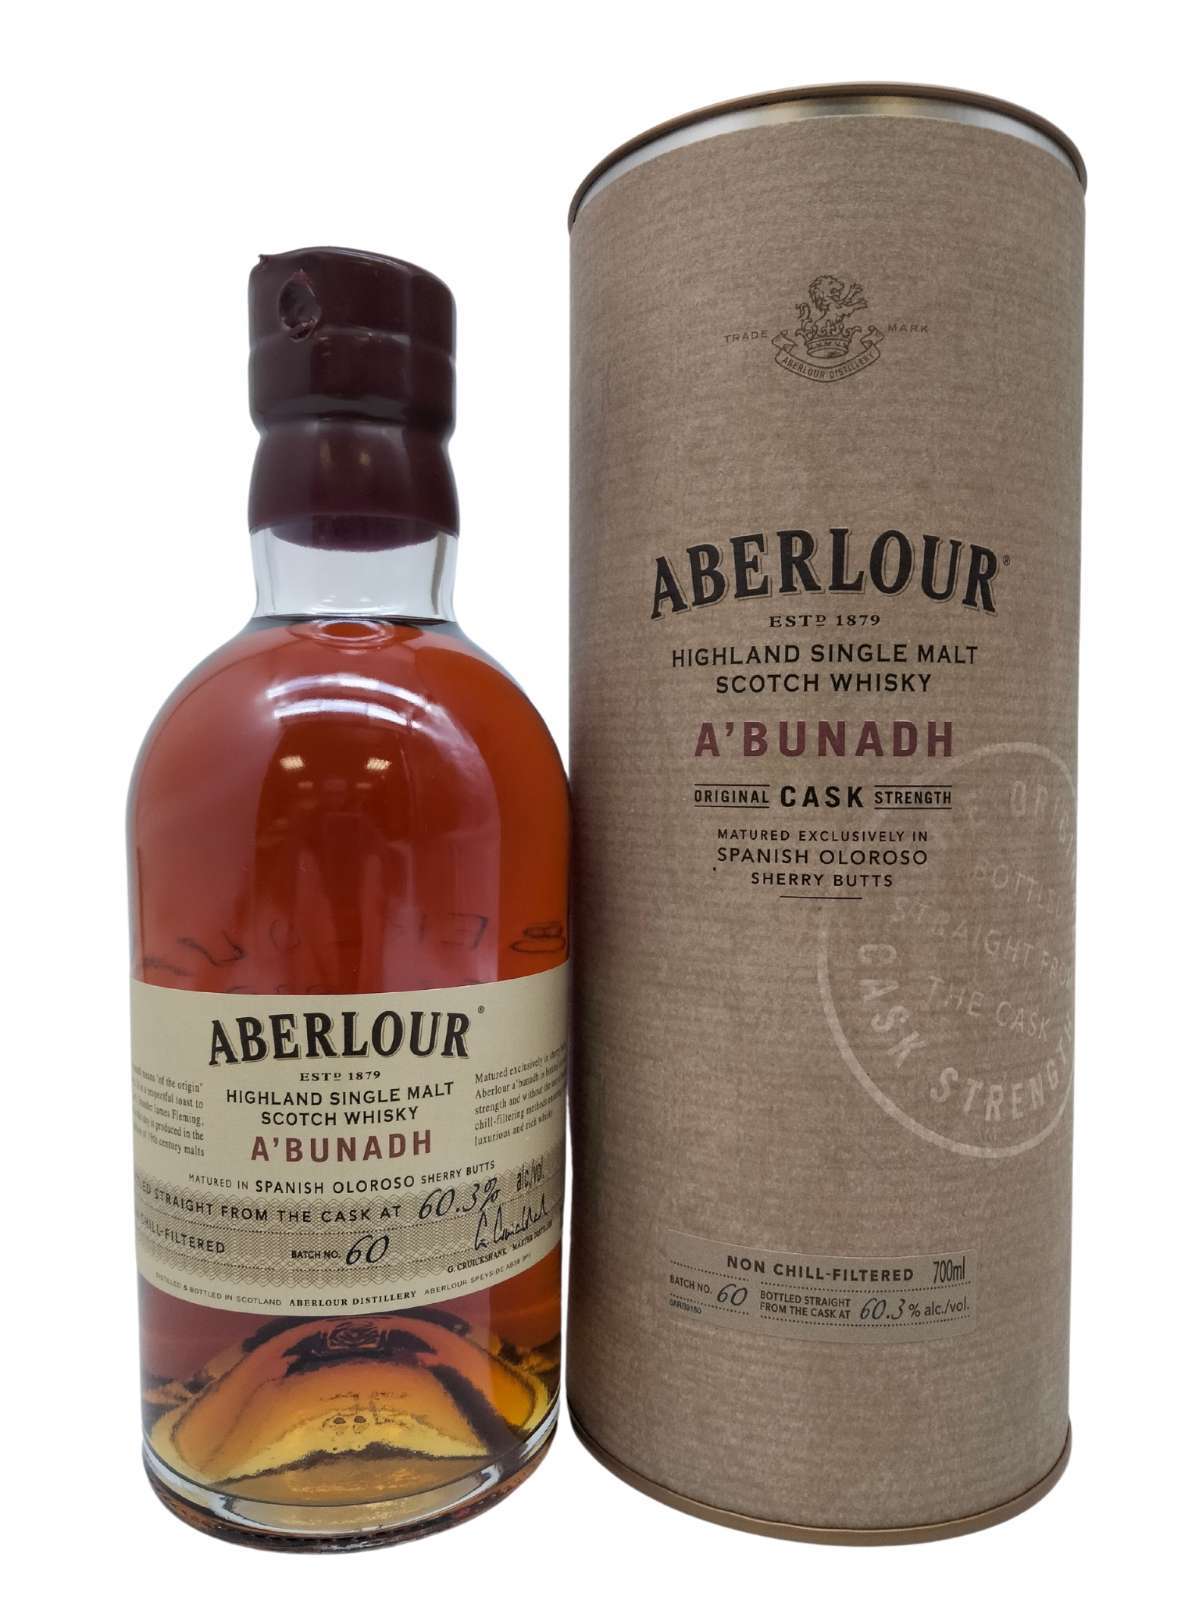 Aberlour A'Bunadh Batch 75 Whisky